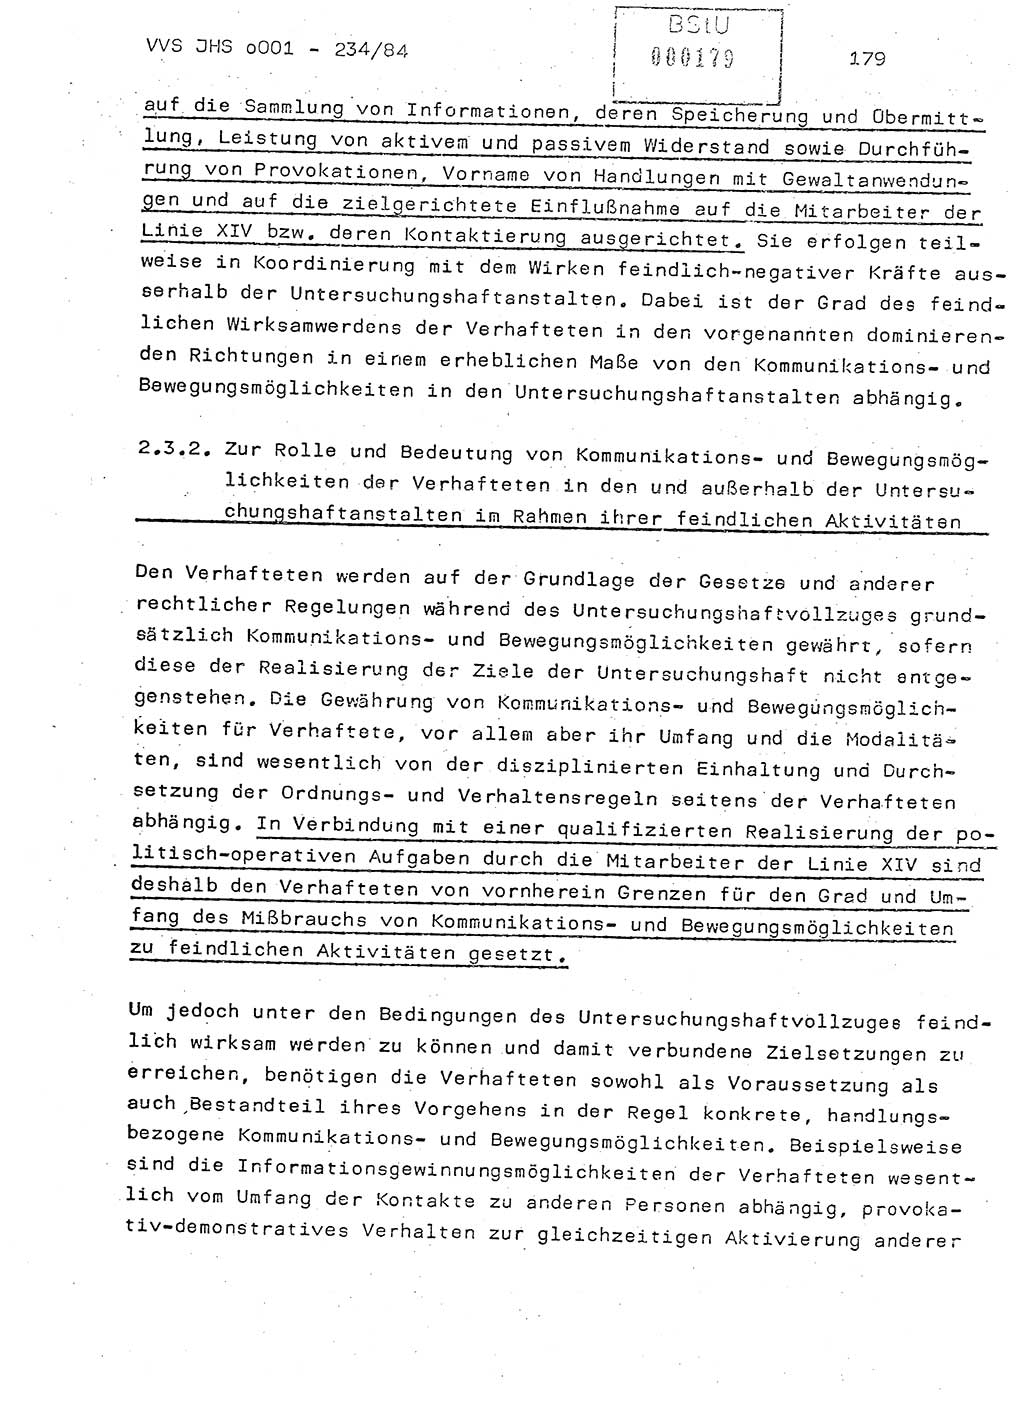 Dissertation Oberst Siegfried Rataizick (Abt. ⅩⅣ), Oberstleutnant Volkmar Heinz (Abt. ⅩⅣ), Oberstleutnant Werner Stein (HA Ⅸ), Hauptmann Heinz Conrad (JHS), Ministerium für Staatssicherheit (MfS) [Deutsche Demokratische Republik (DDR)], Juristische Hochschule (JHS), Vertrauliche Verschlußsache (VVS) o001-234/84, Potsdam 1984, Seite 179 (Diss. MfS DDR JHS VVS o001-234/84 1984, S. 179)